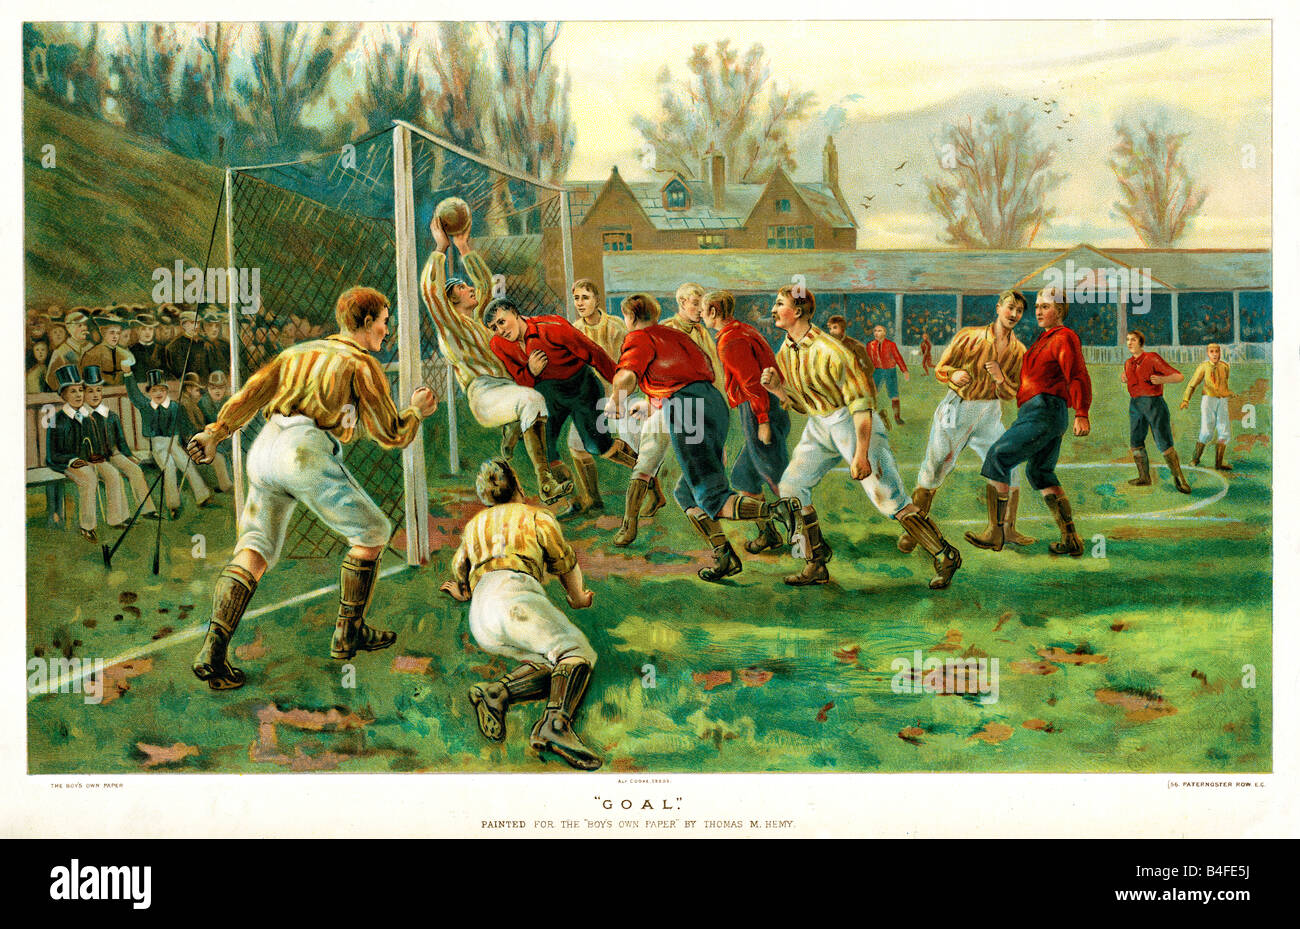 Objectif 1882 imprimer par Thomas Hemy de goalscoring victorienne dans un match de football avec une foule de collégiens d'encourager le jeu Banque D'Images